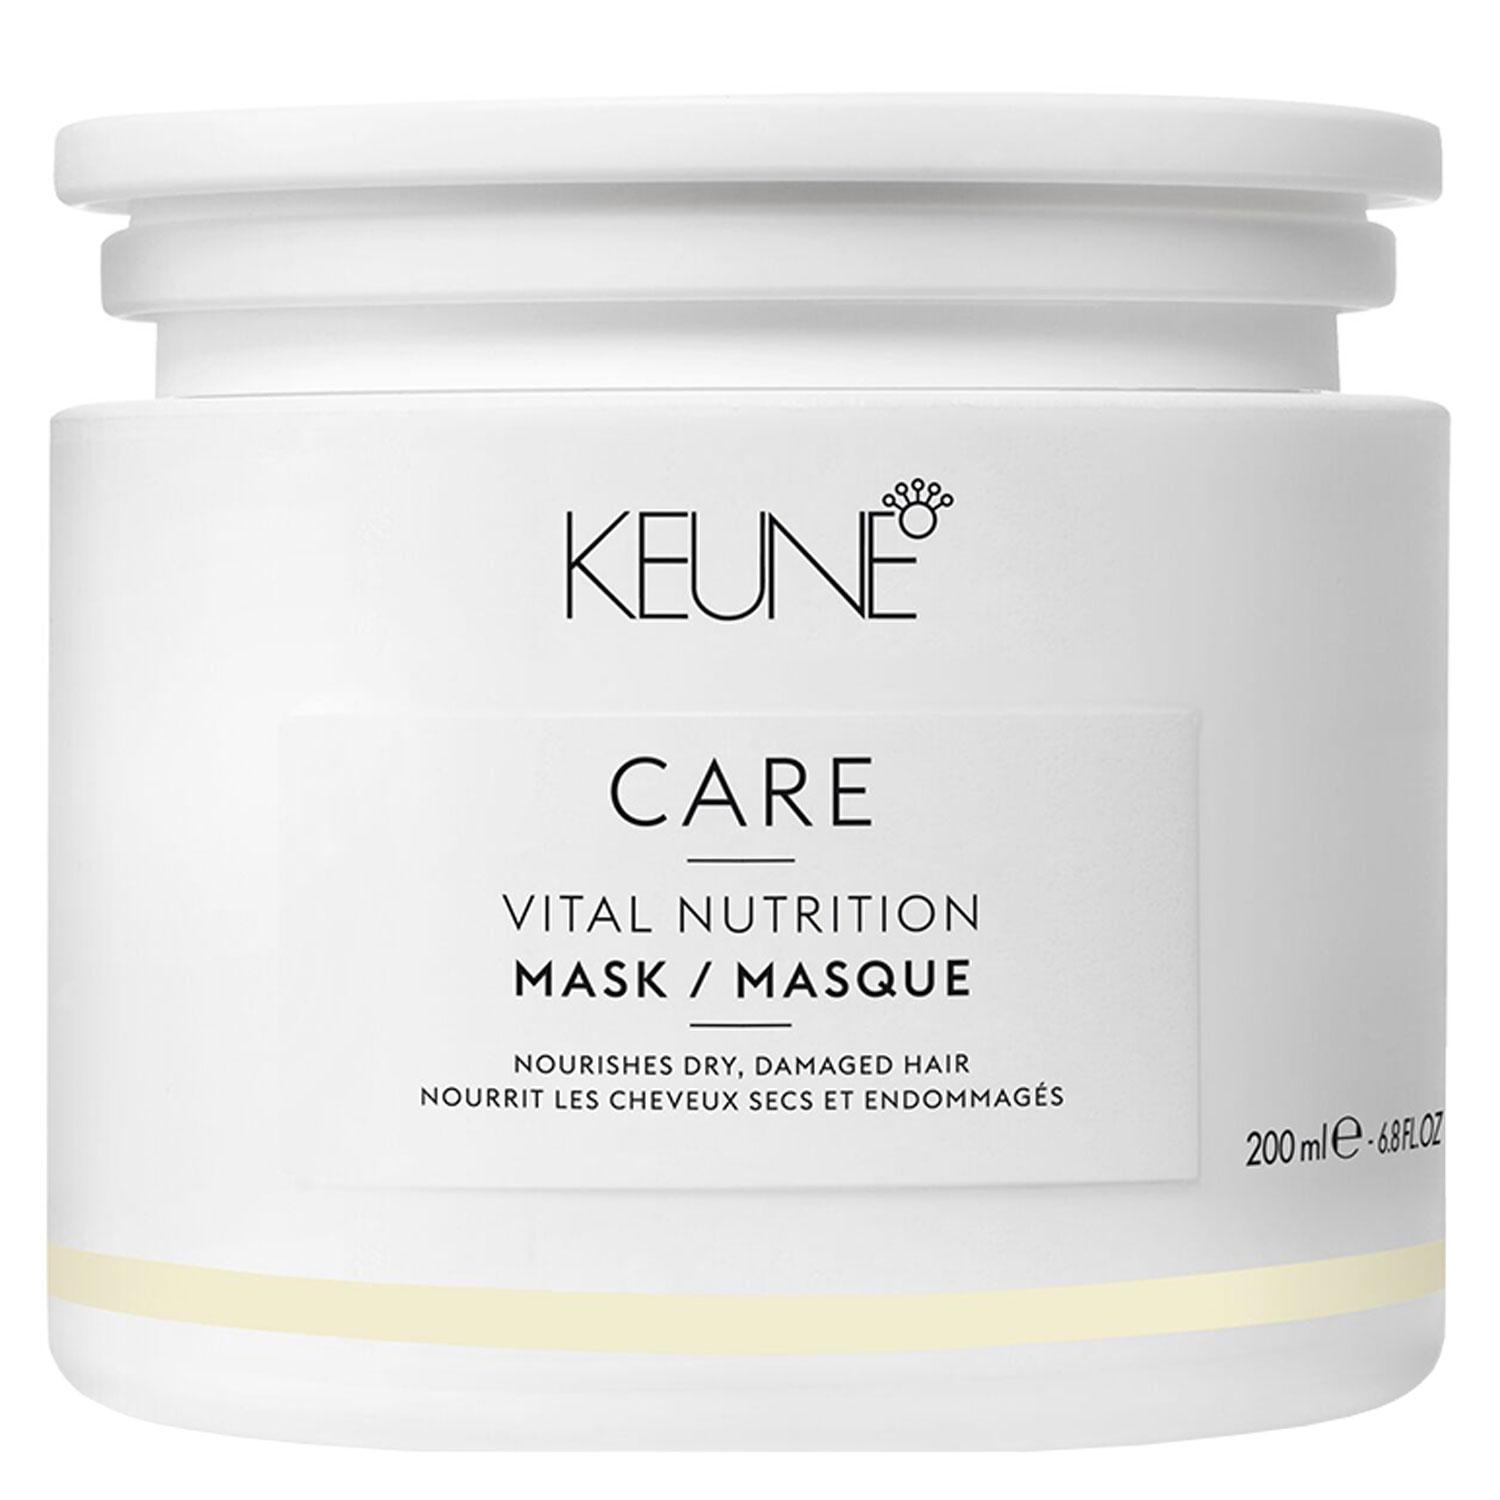 Keune Care - Vital Nutrition Mask